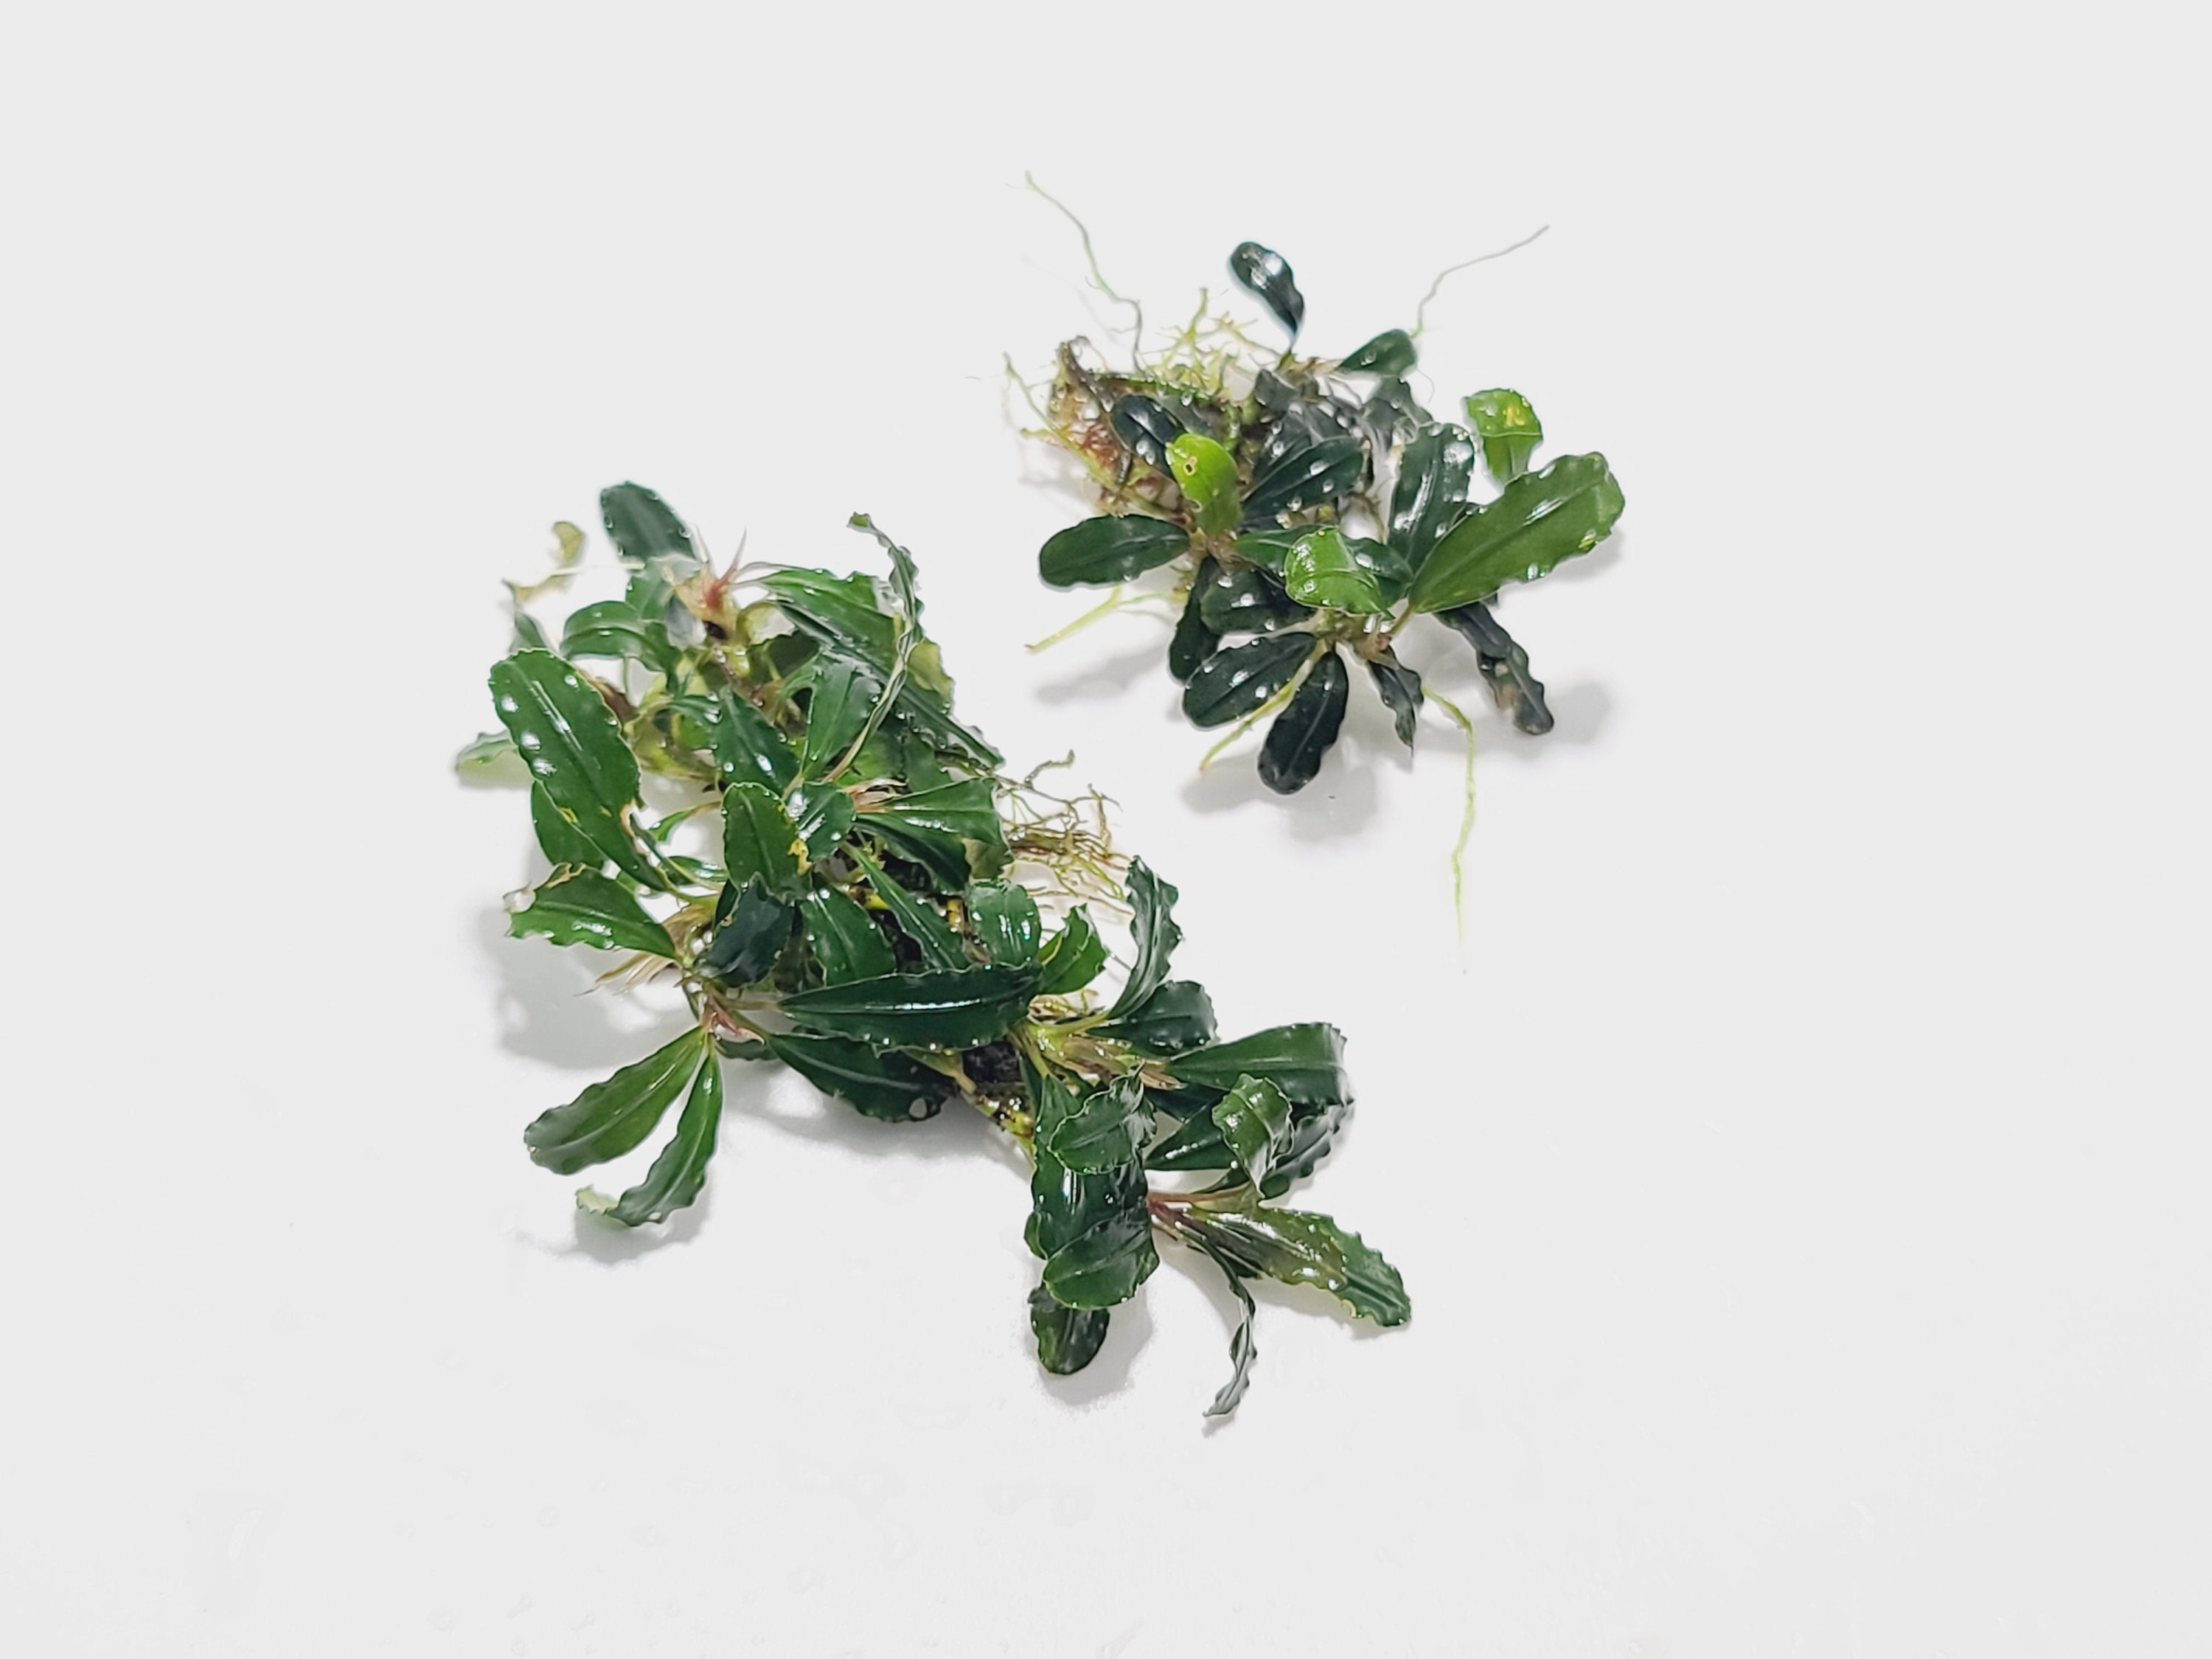 Bucephalandra sp Centipede - Submerged Grown! Aquarium, terrarium,  paladarium or vivarium epiphyte plant brownie